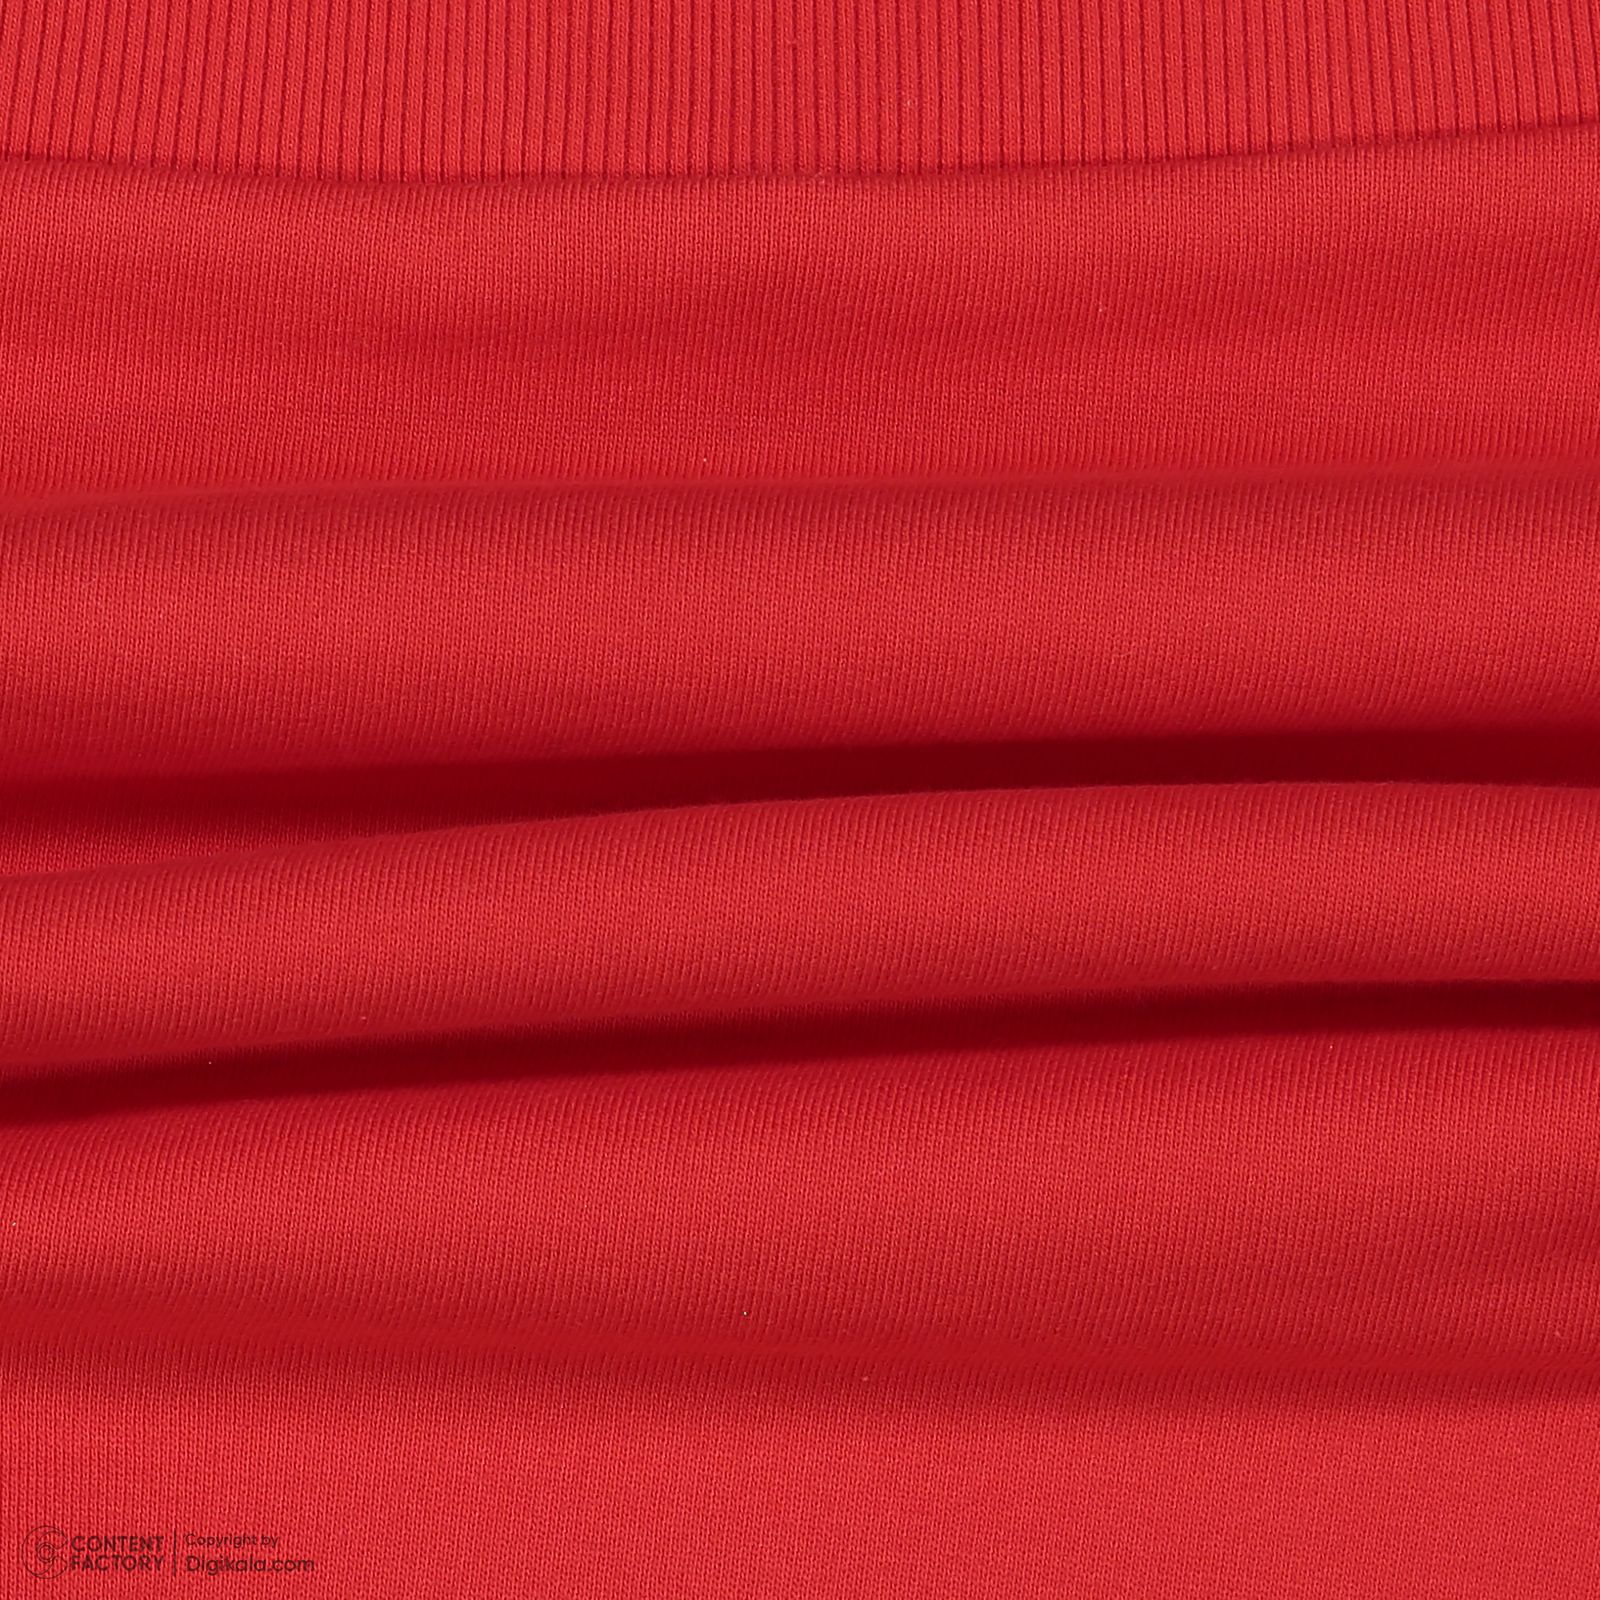 سویشرت دخترانه رینگ مدل BKK01177/1 رنگ قرمز -  - 2